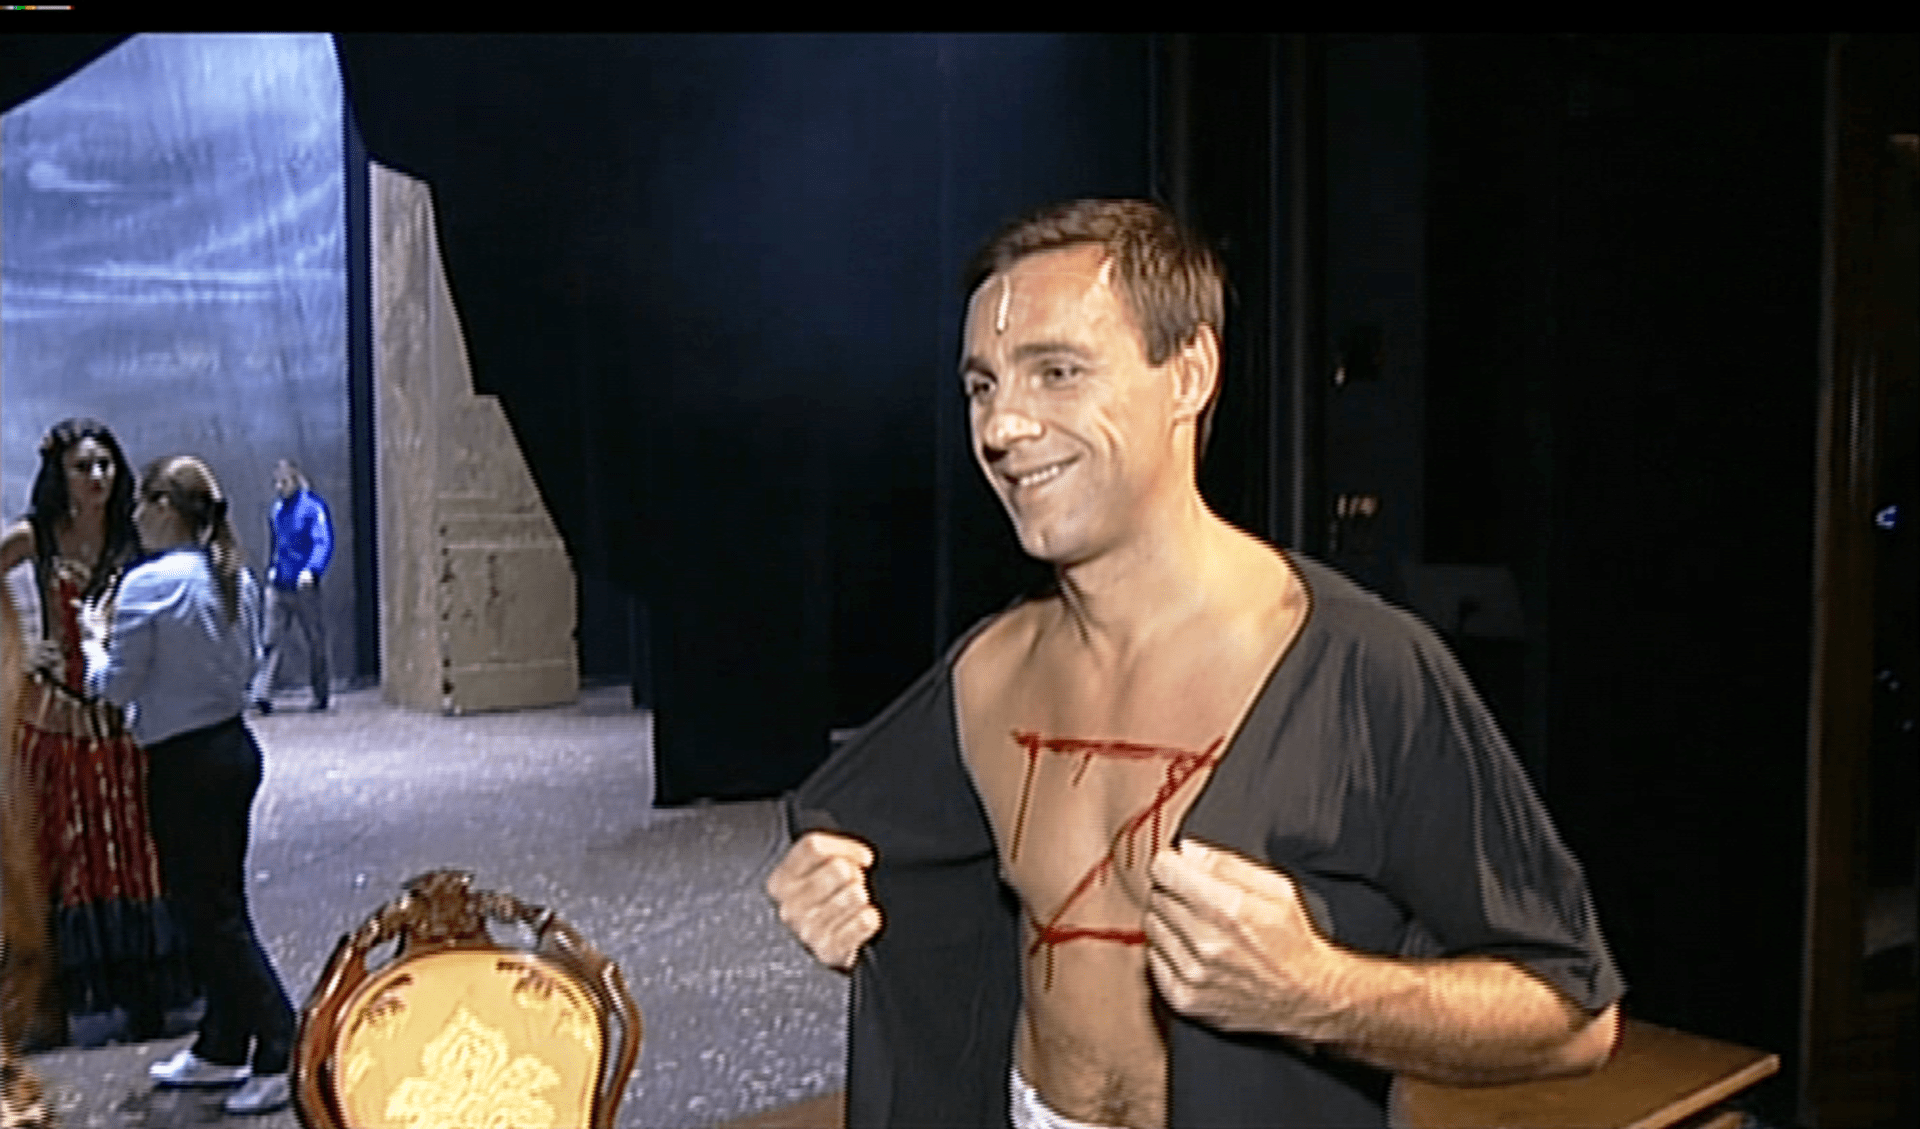 Video VIP zprávy: Roman Vojtek ukazuje svůj mužný, krvácející hrudník po zásahu protivníka